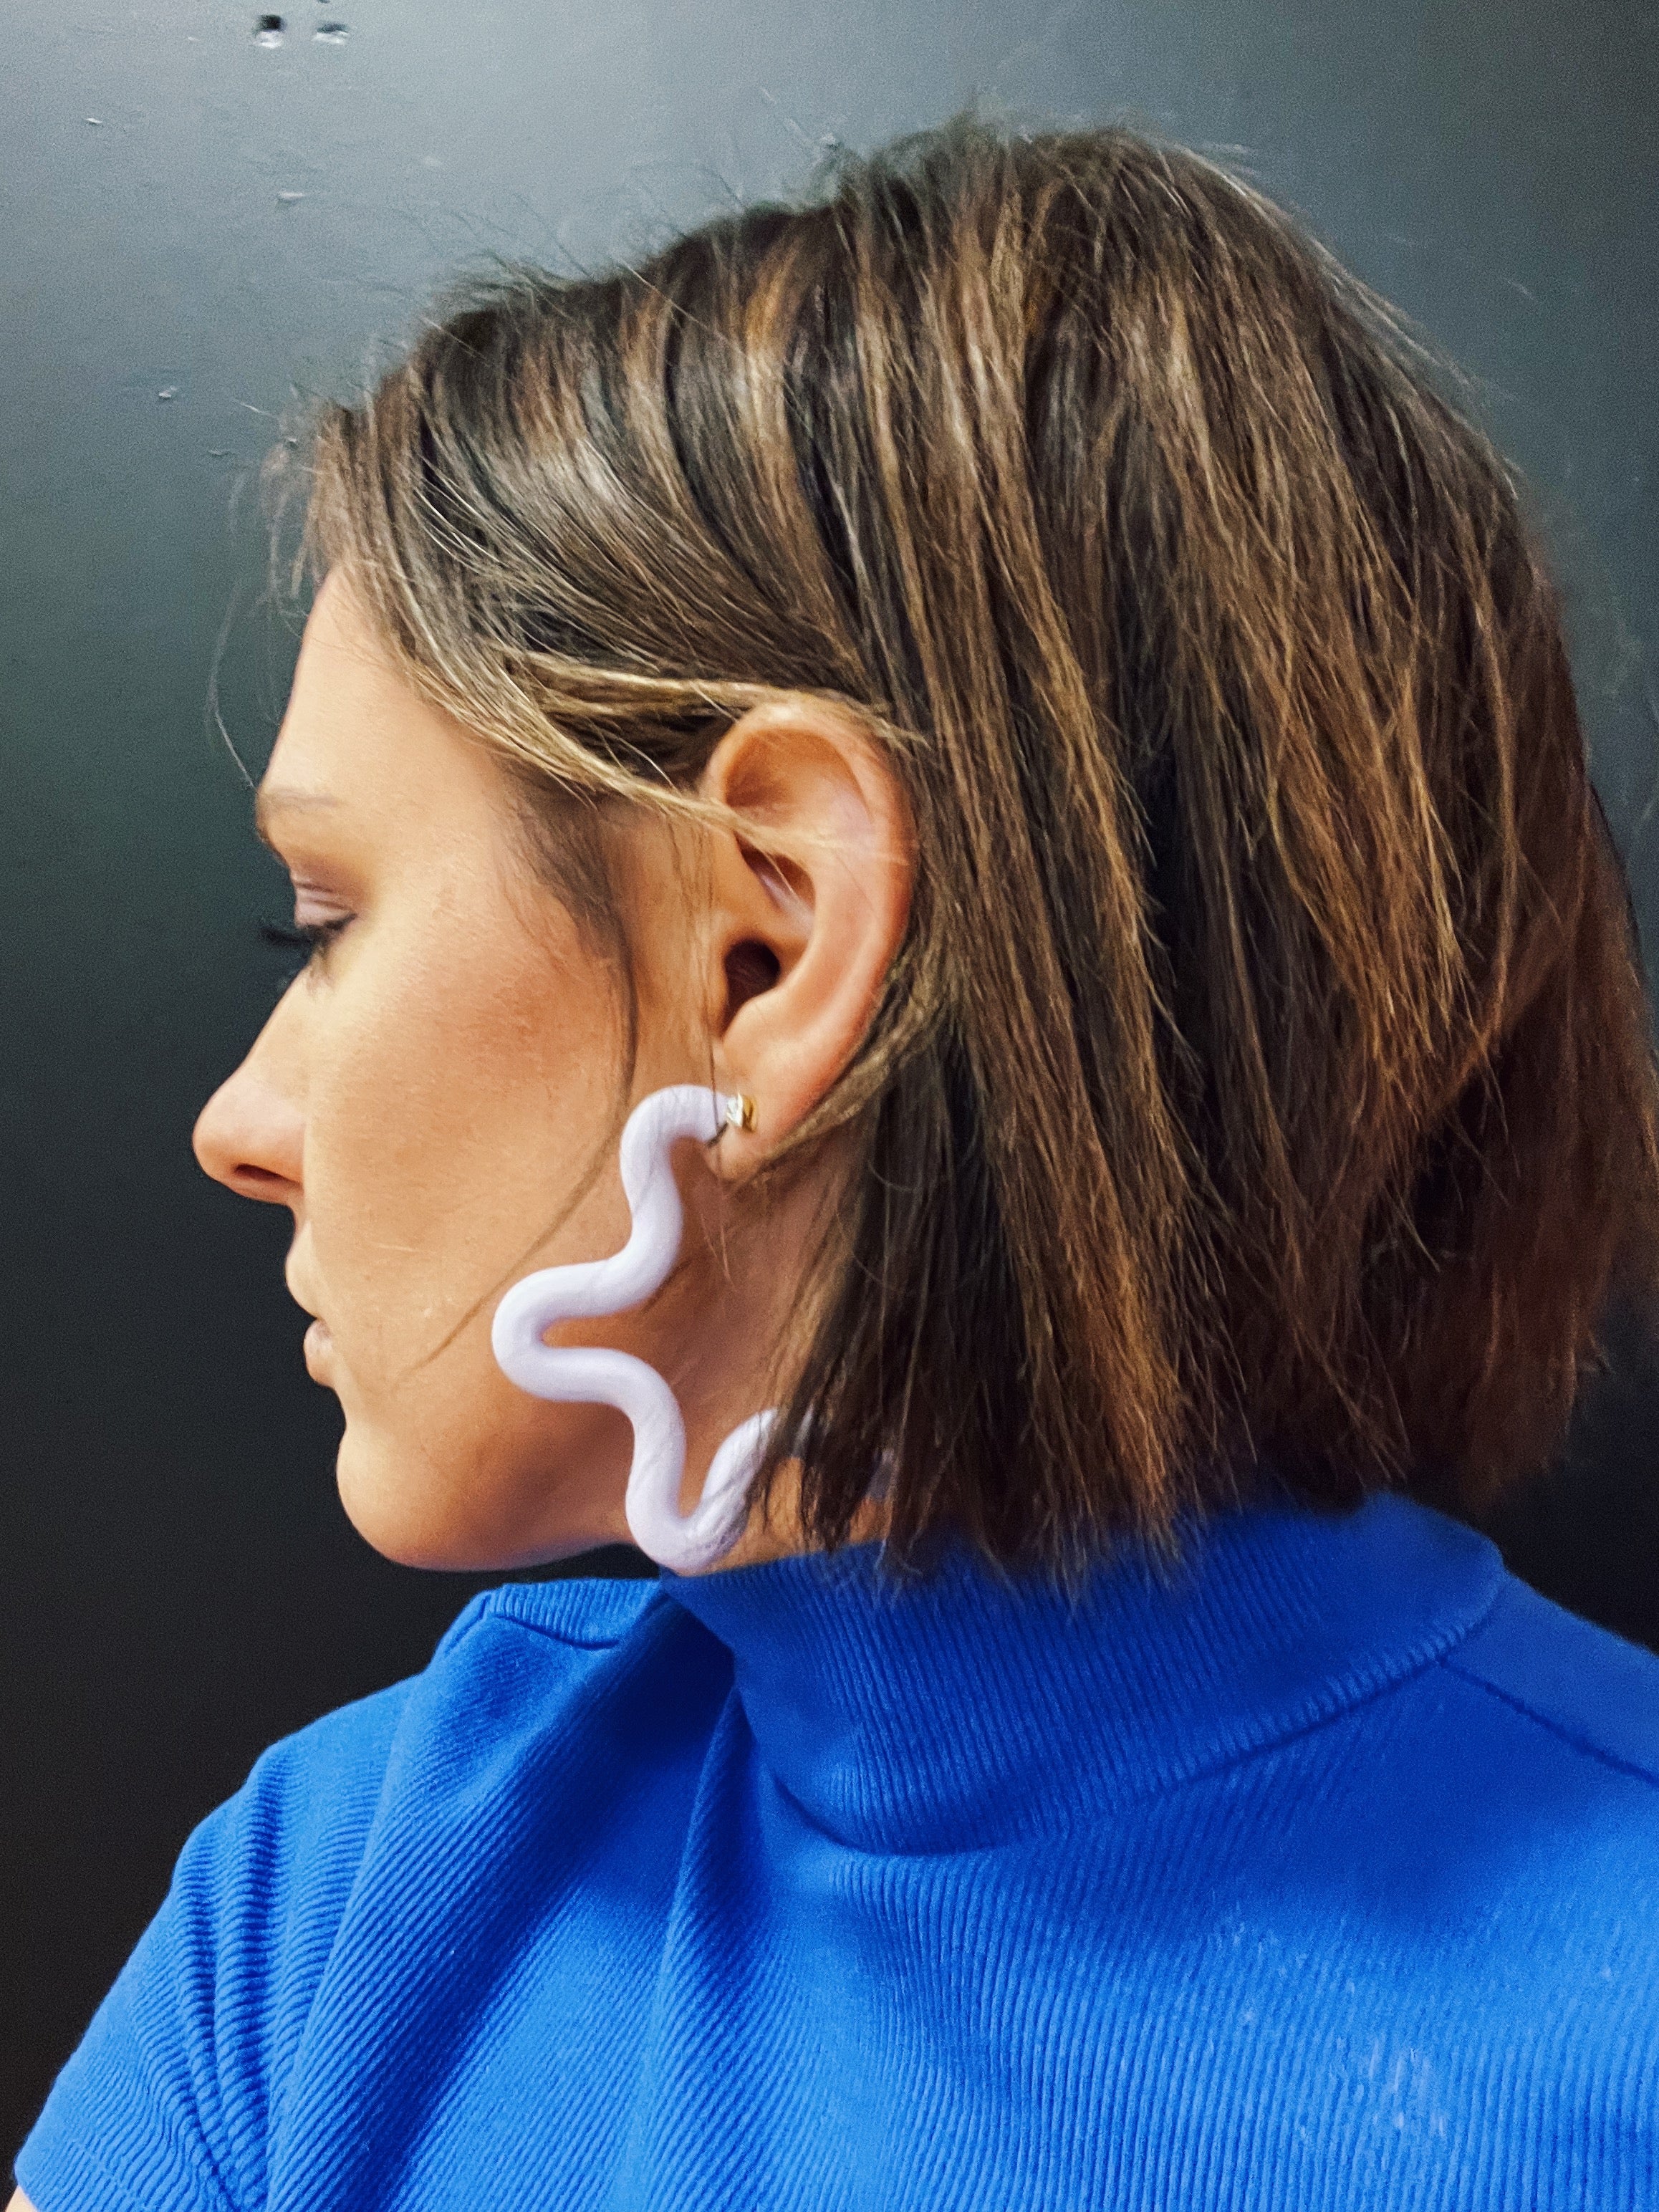 Alexis Hoop Earrings – Hot Spice Jewelry